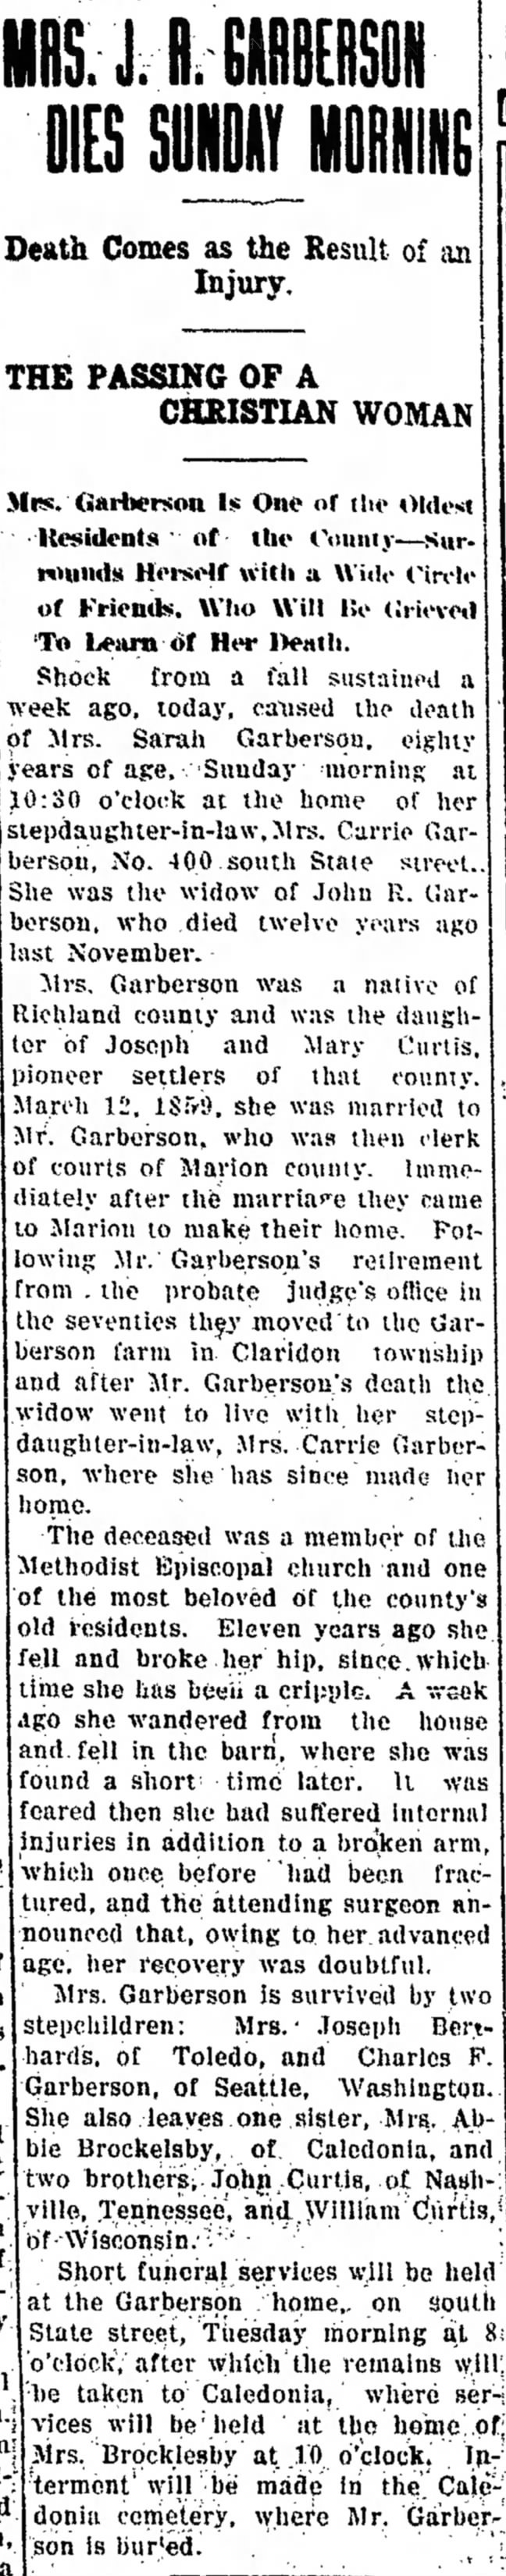 Obituary, Marion Star, 6 Dec 1909